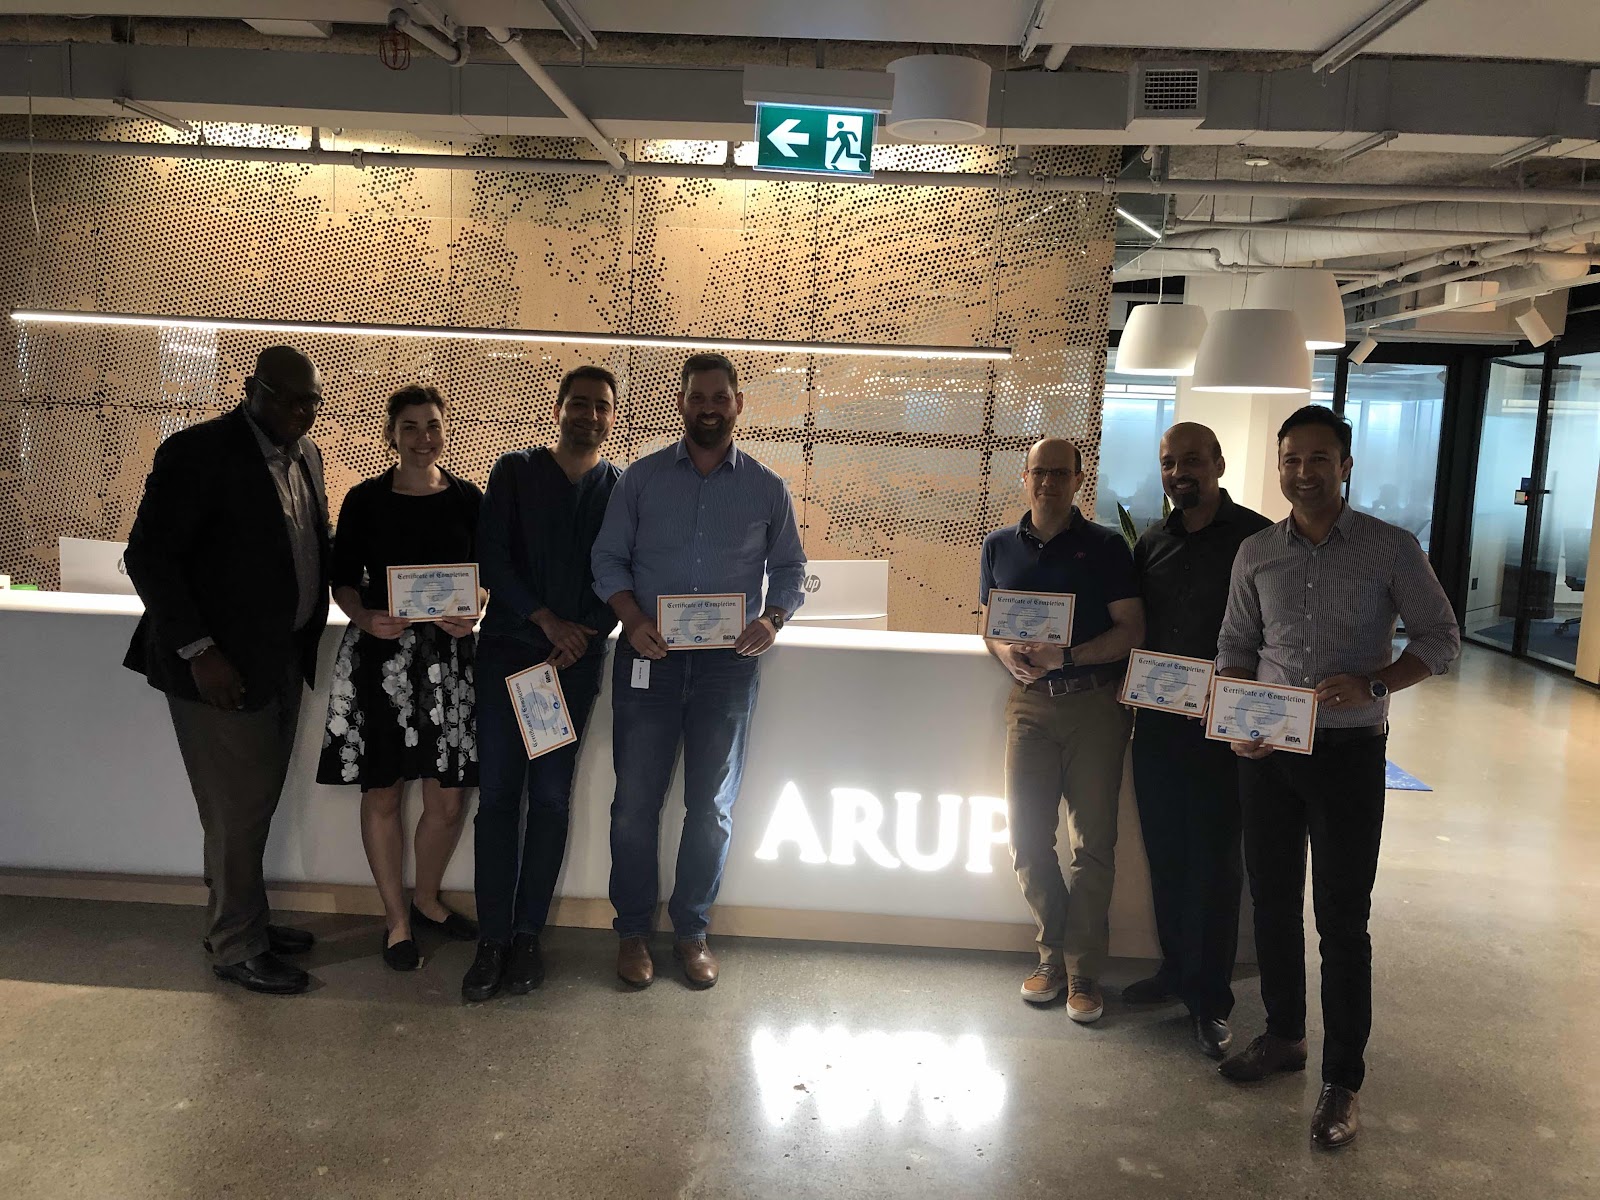 Team Arup - we congratulate you!!